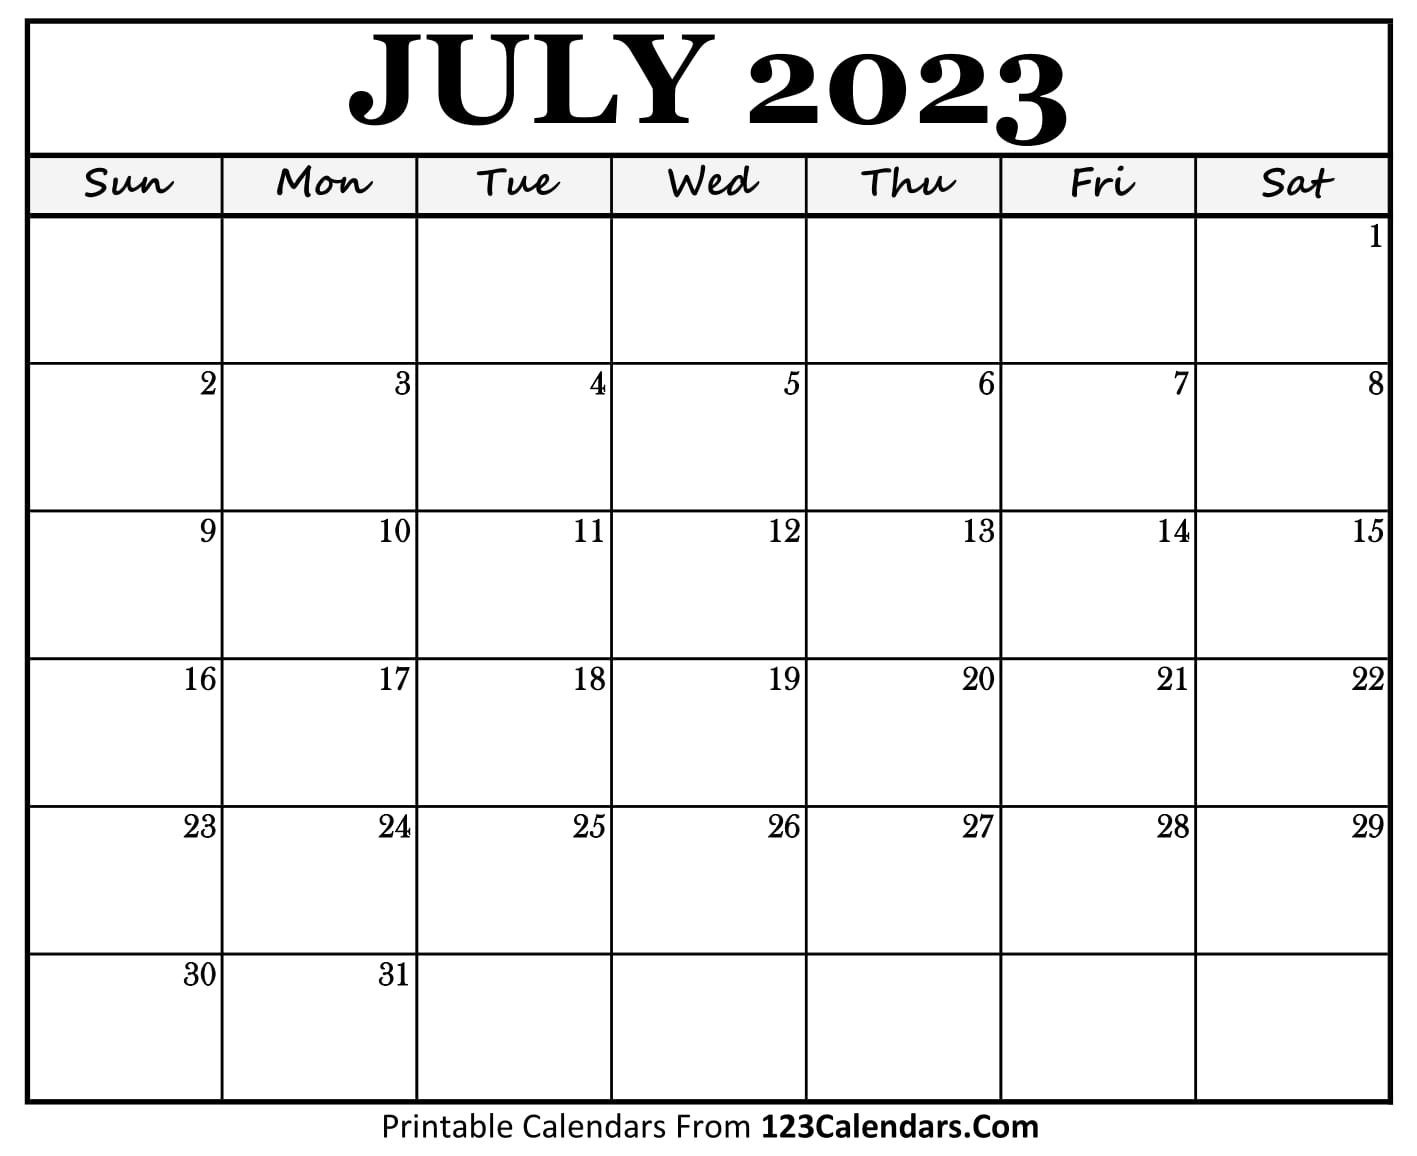 July 2023 Calendar Printable 123calnedars com｜123Calendars com